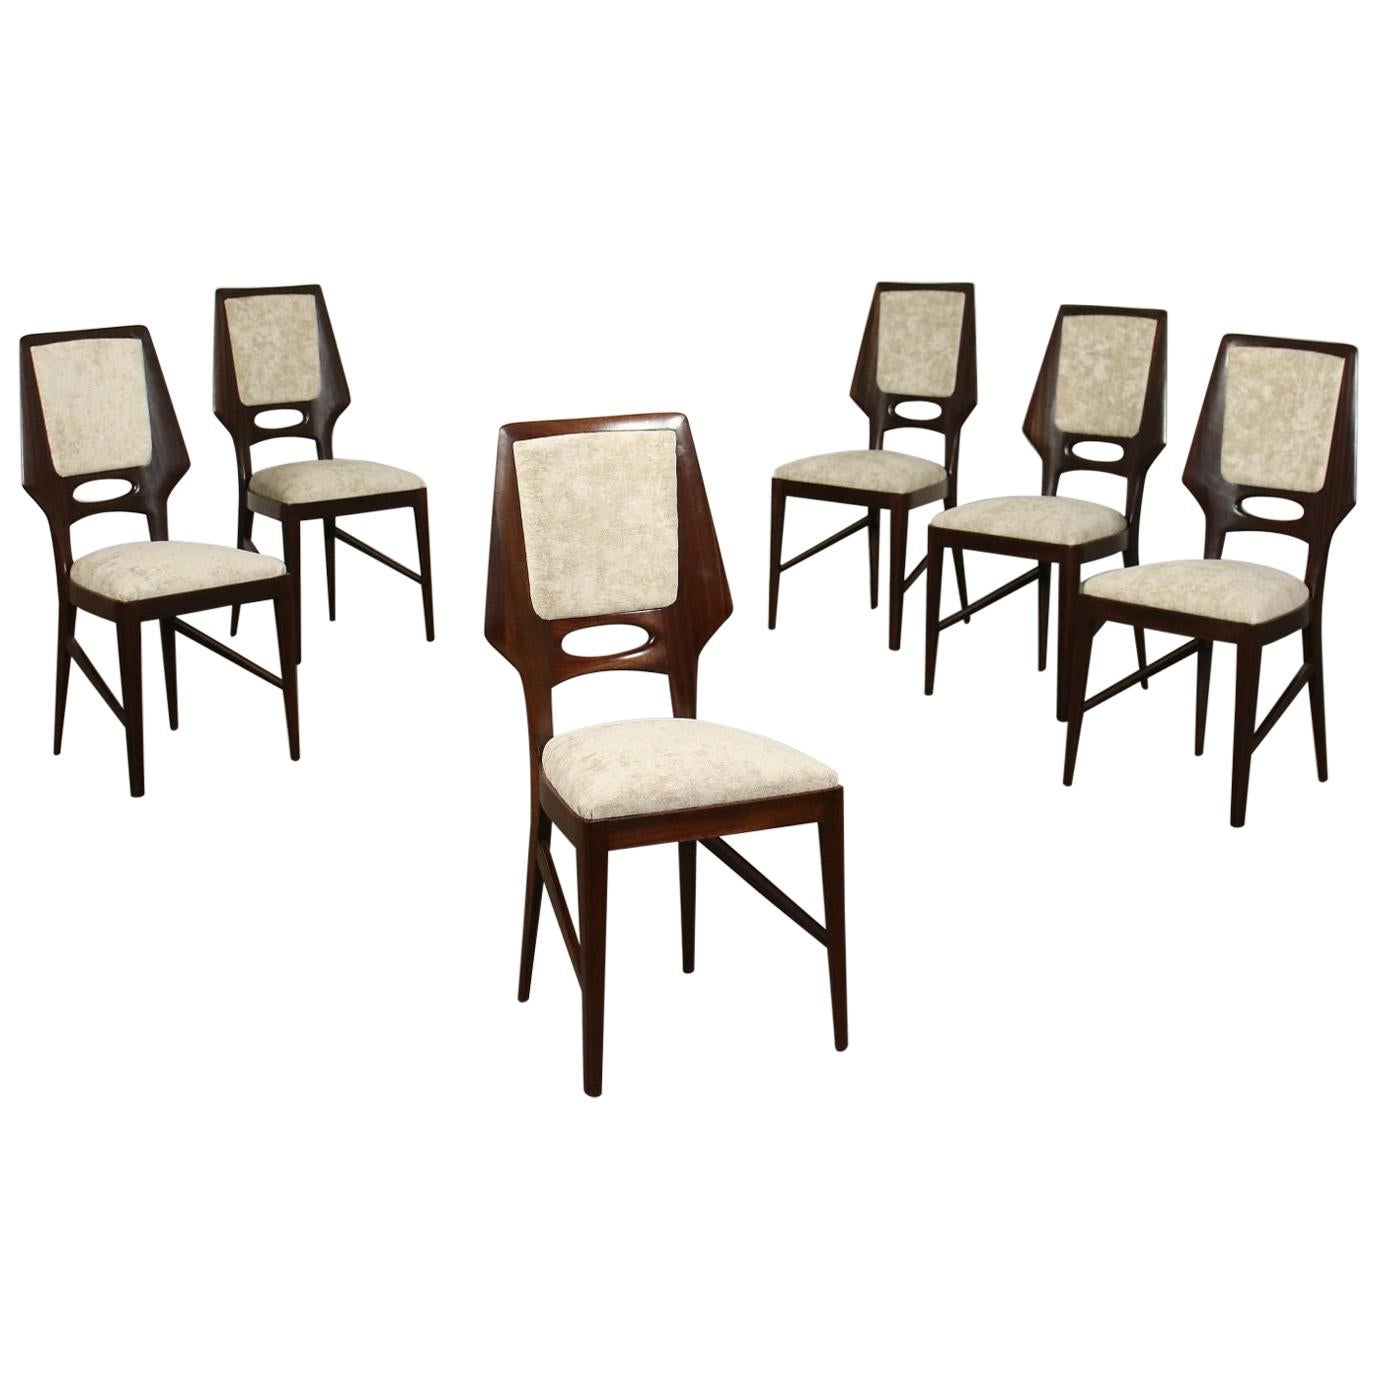 Group of Six Chairs Mahogany Velvet Foam, Italy, 1950s